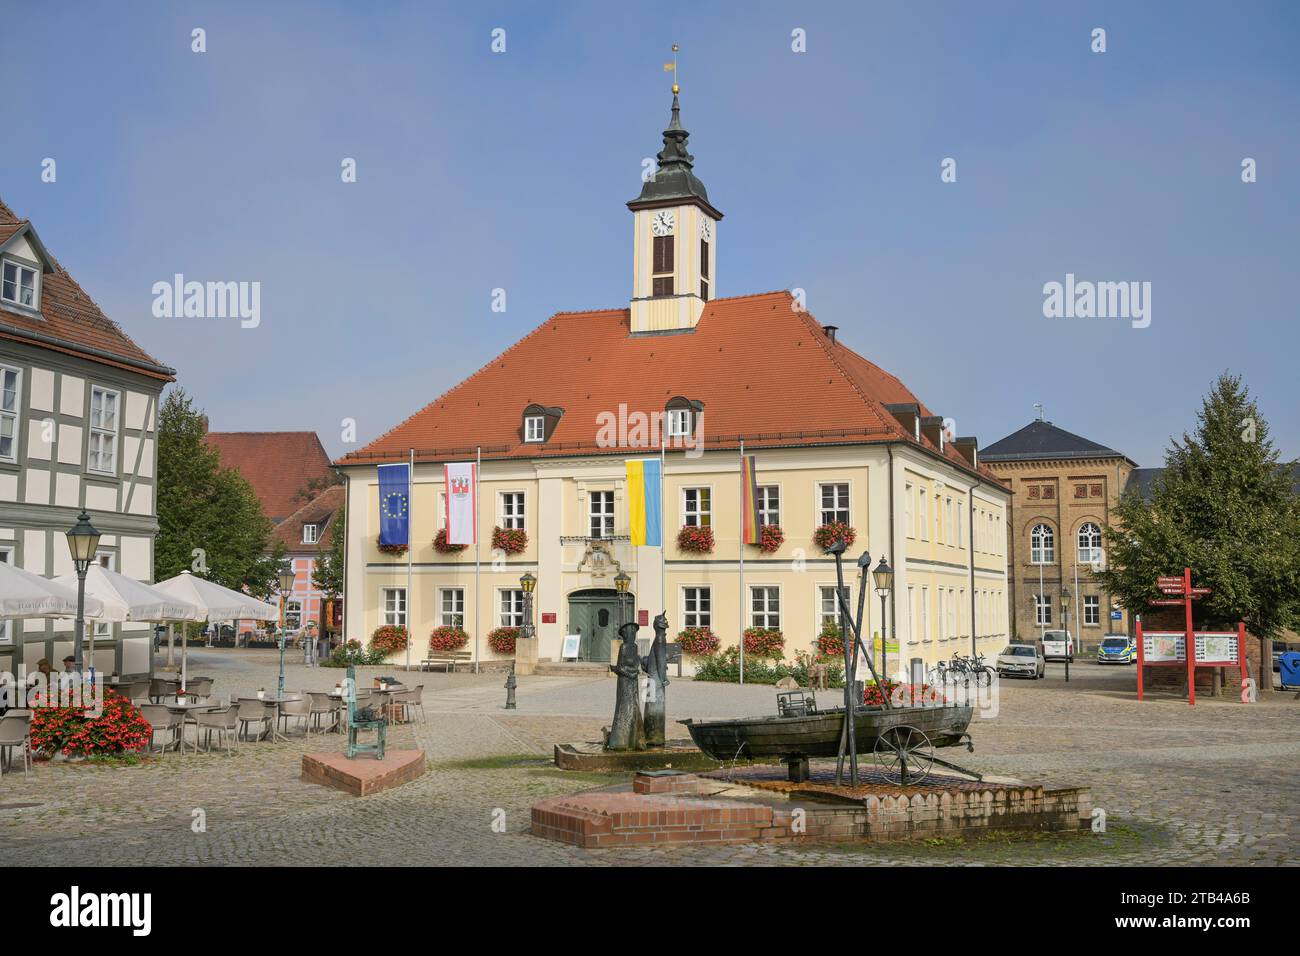 Municipio della città vecchia, Piazza del mercato, Angermuende, Brandeburgo, Germania Foto Stock